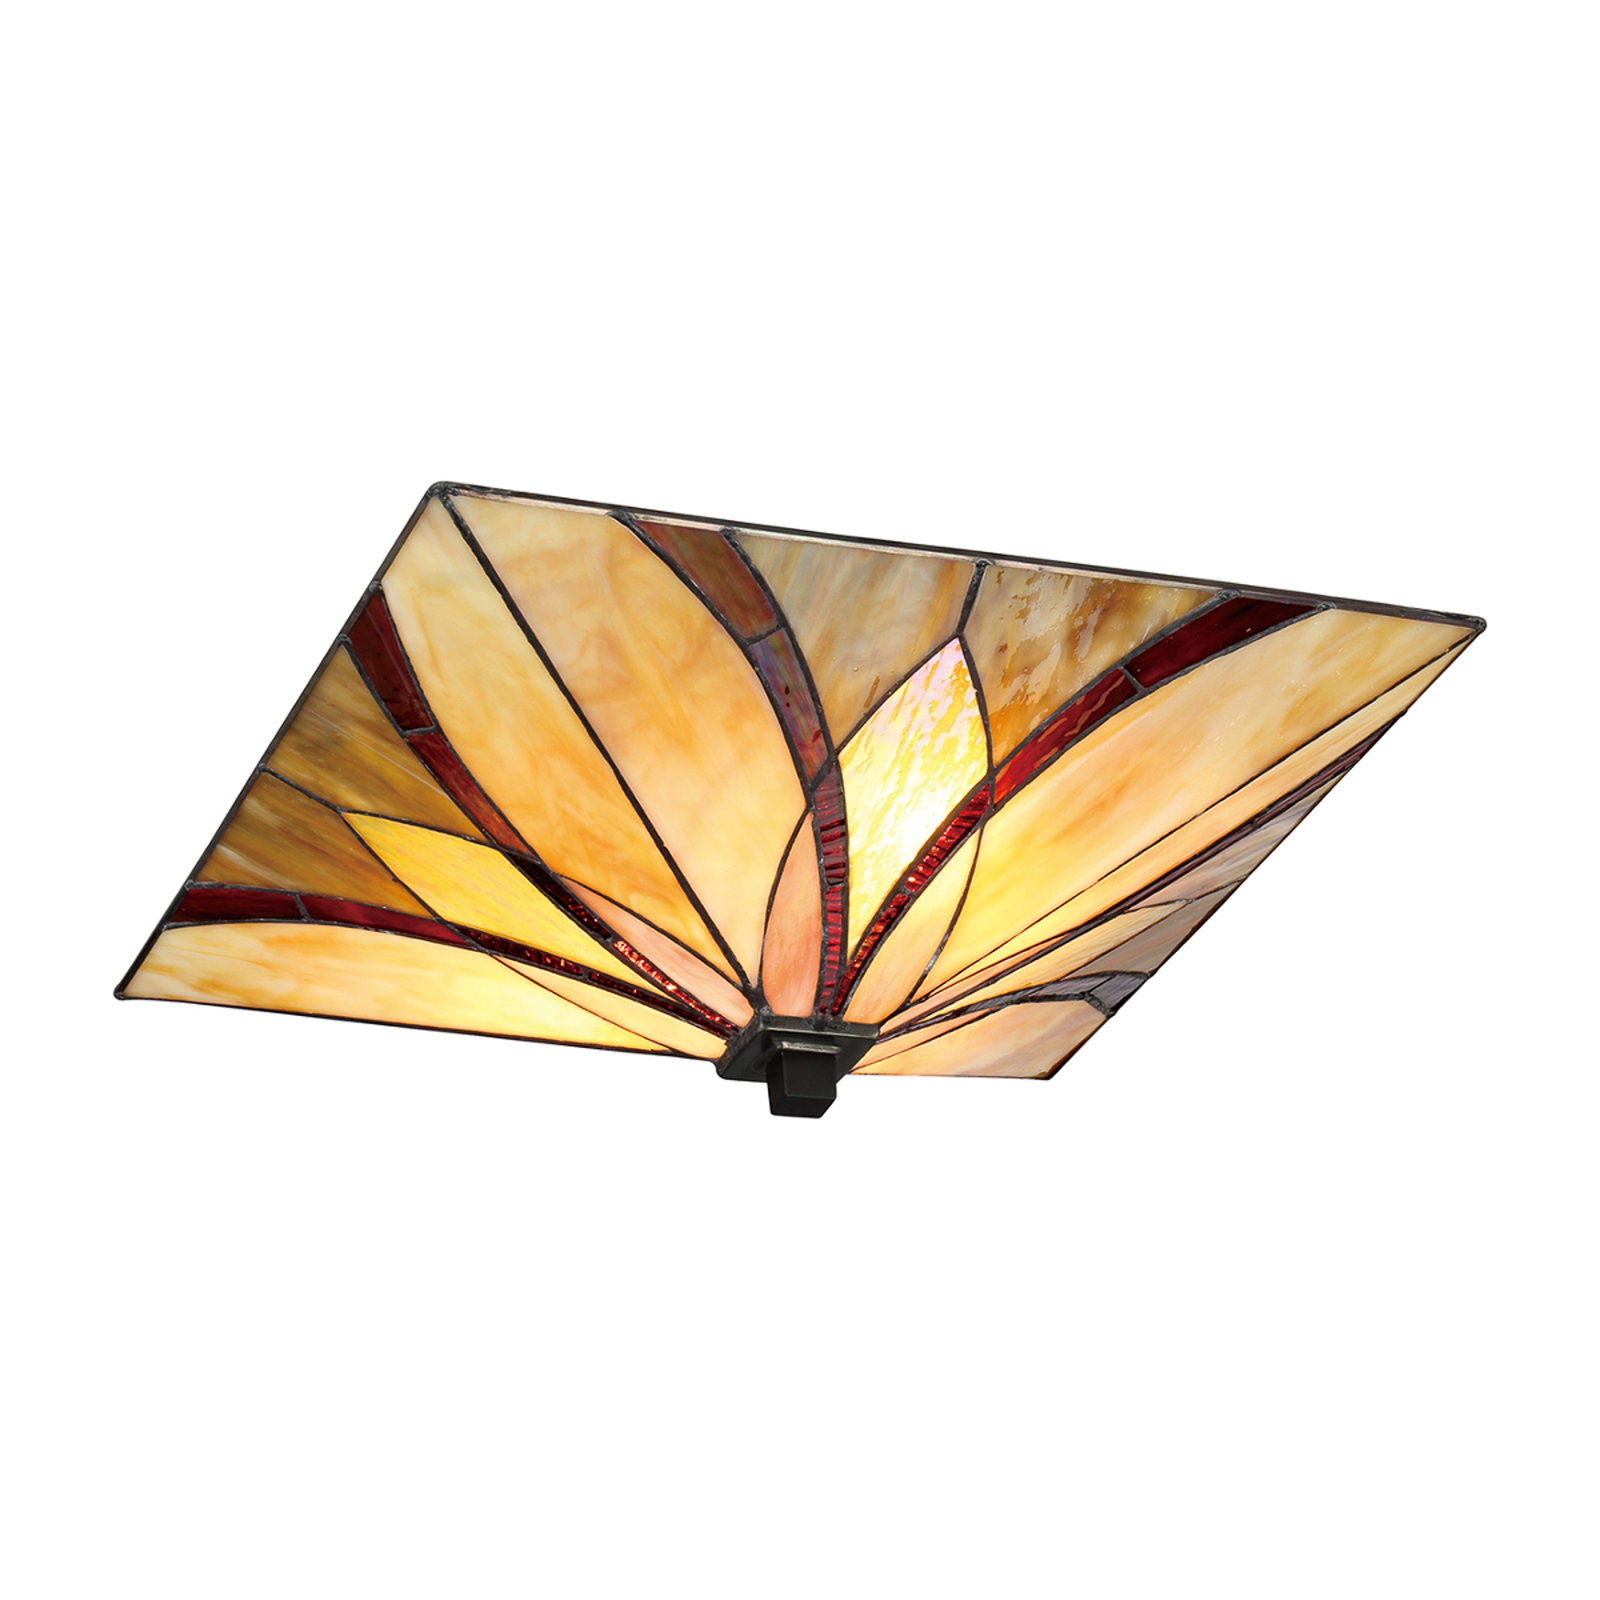 Asheville ceiling light Tiffany design, 16.7 cm